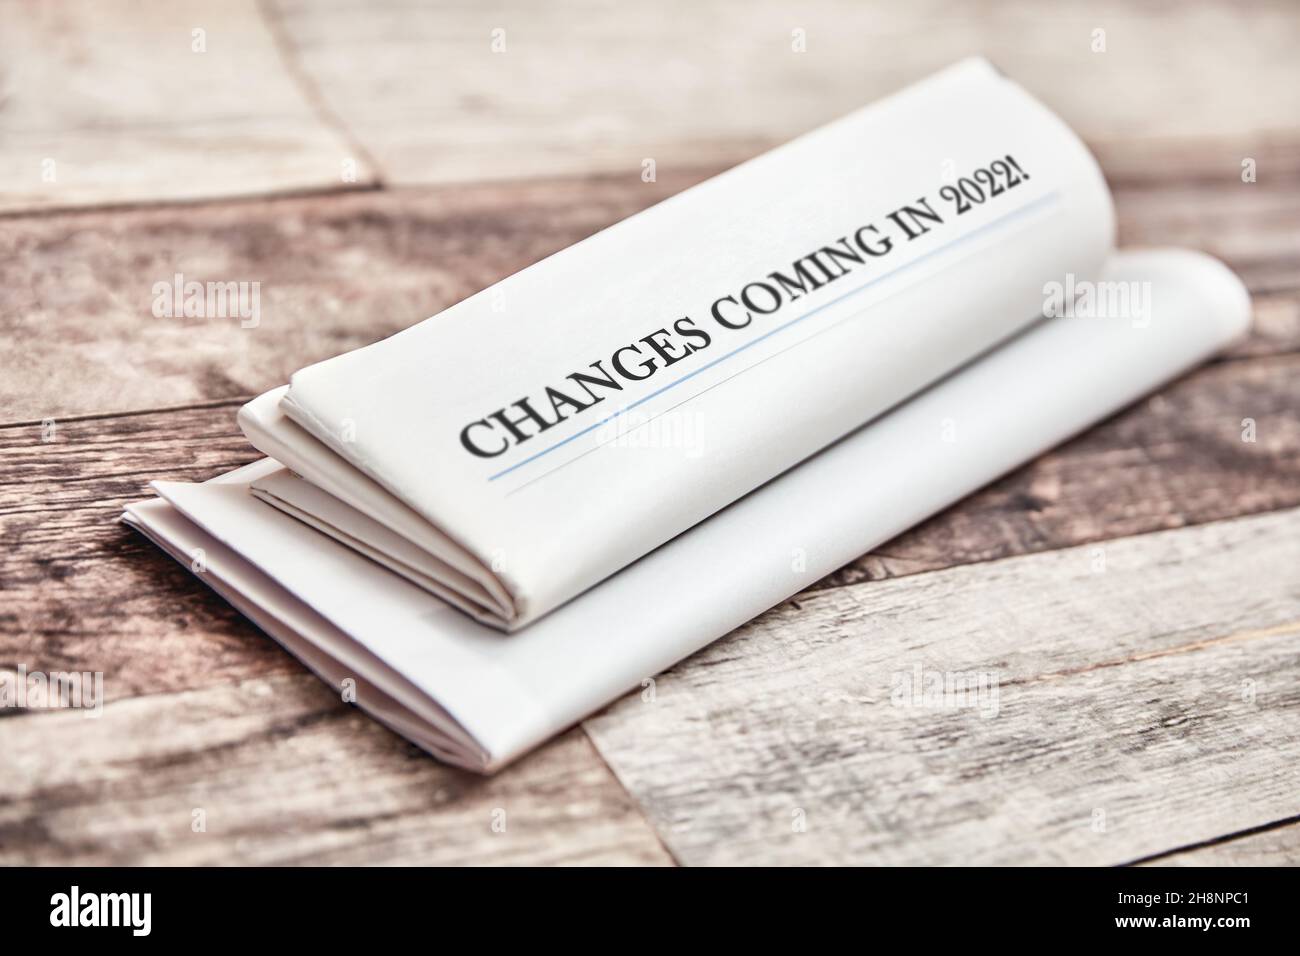 Les changements à venir en 2022 sont écrits sur la première page d'un journal plié sur une table en bois Banque D'Images